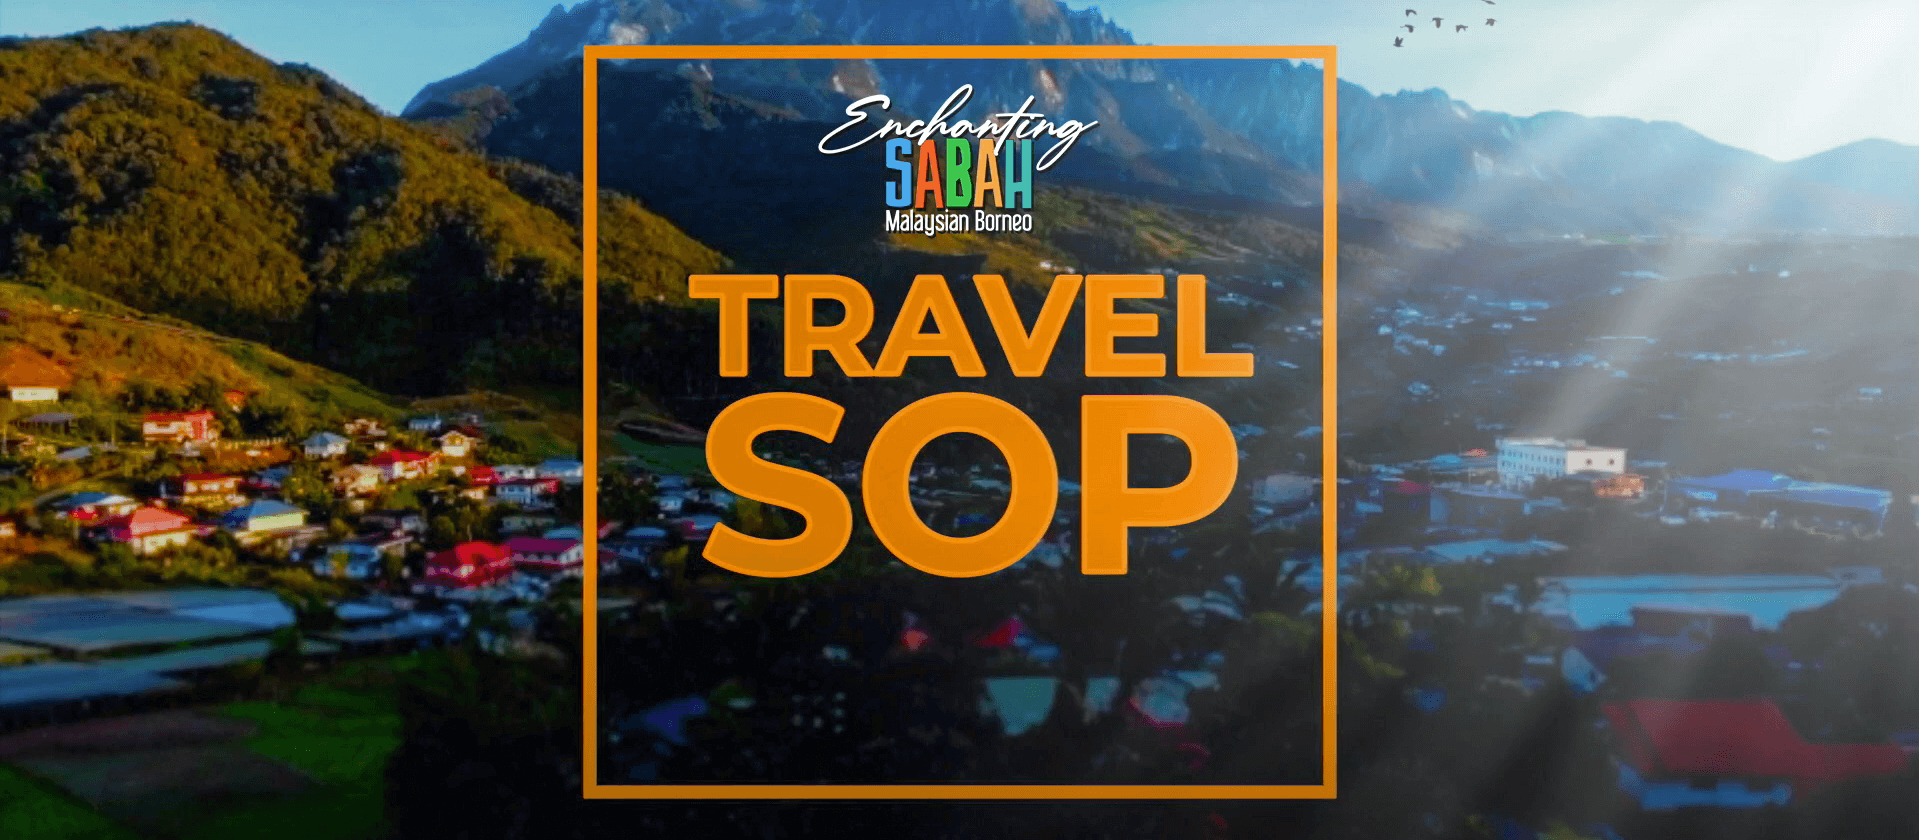 SOP - Sabah Original Place